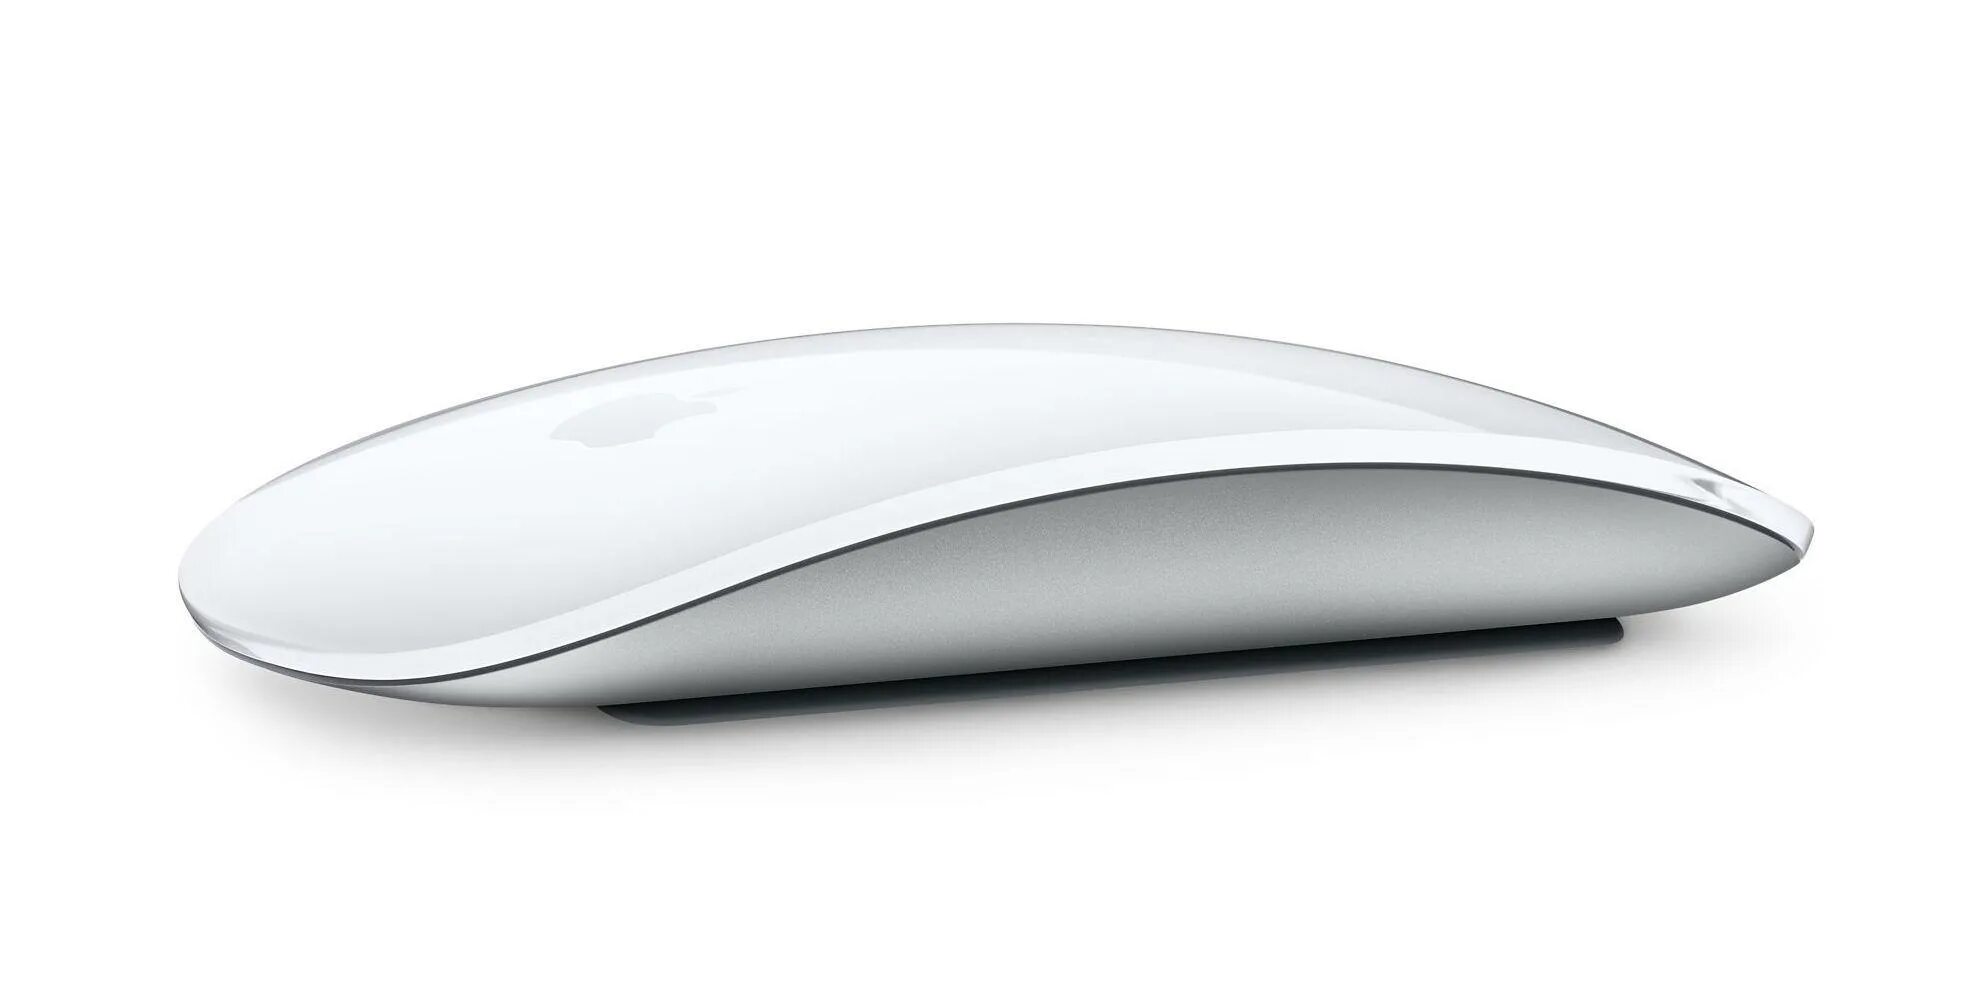 Мышь Apple Magic Mouse 2. Apple Magic Mouse 2 mla02zm/a. Мышь Apple Magic Mouse 3. Мышь Apple Magic Mouse / mk2e3.